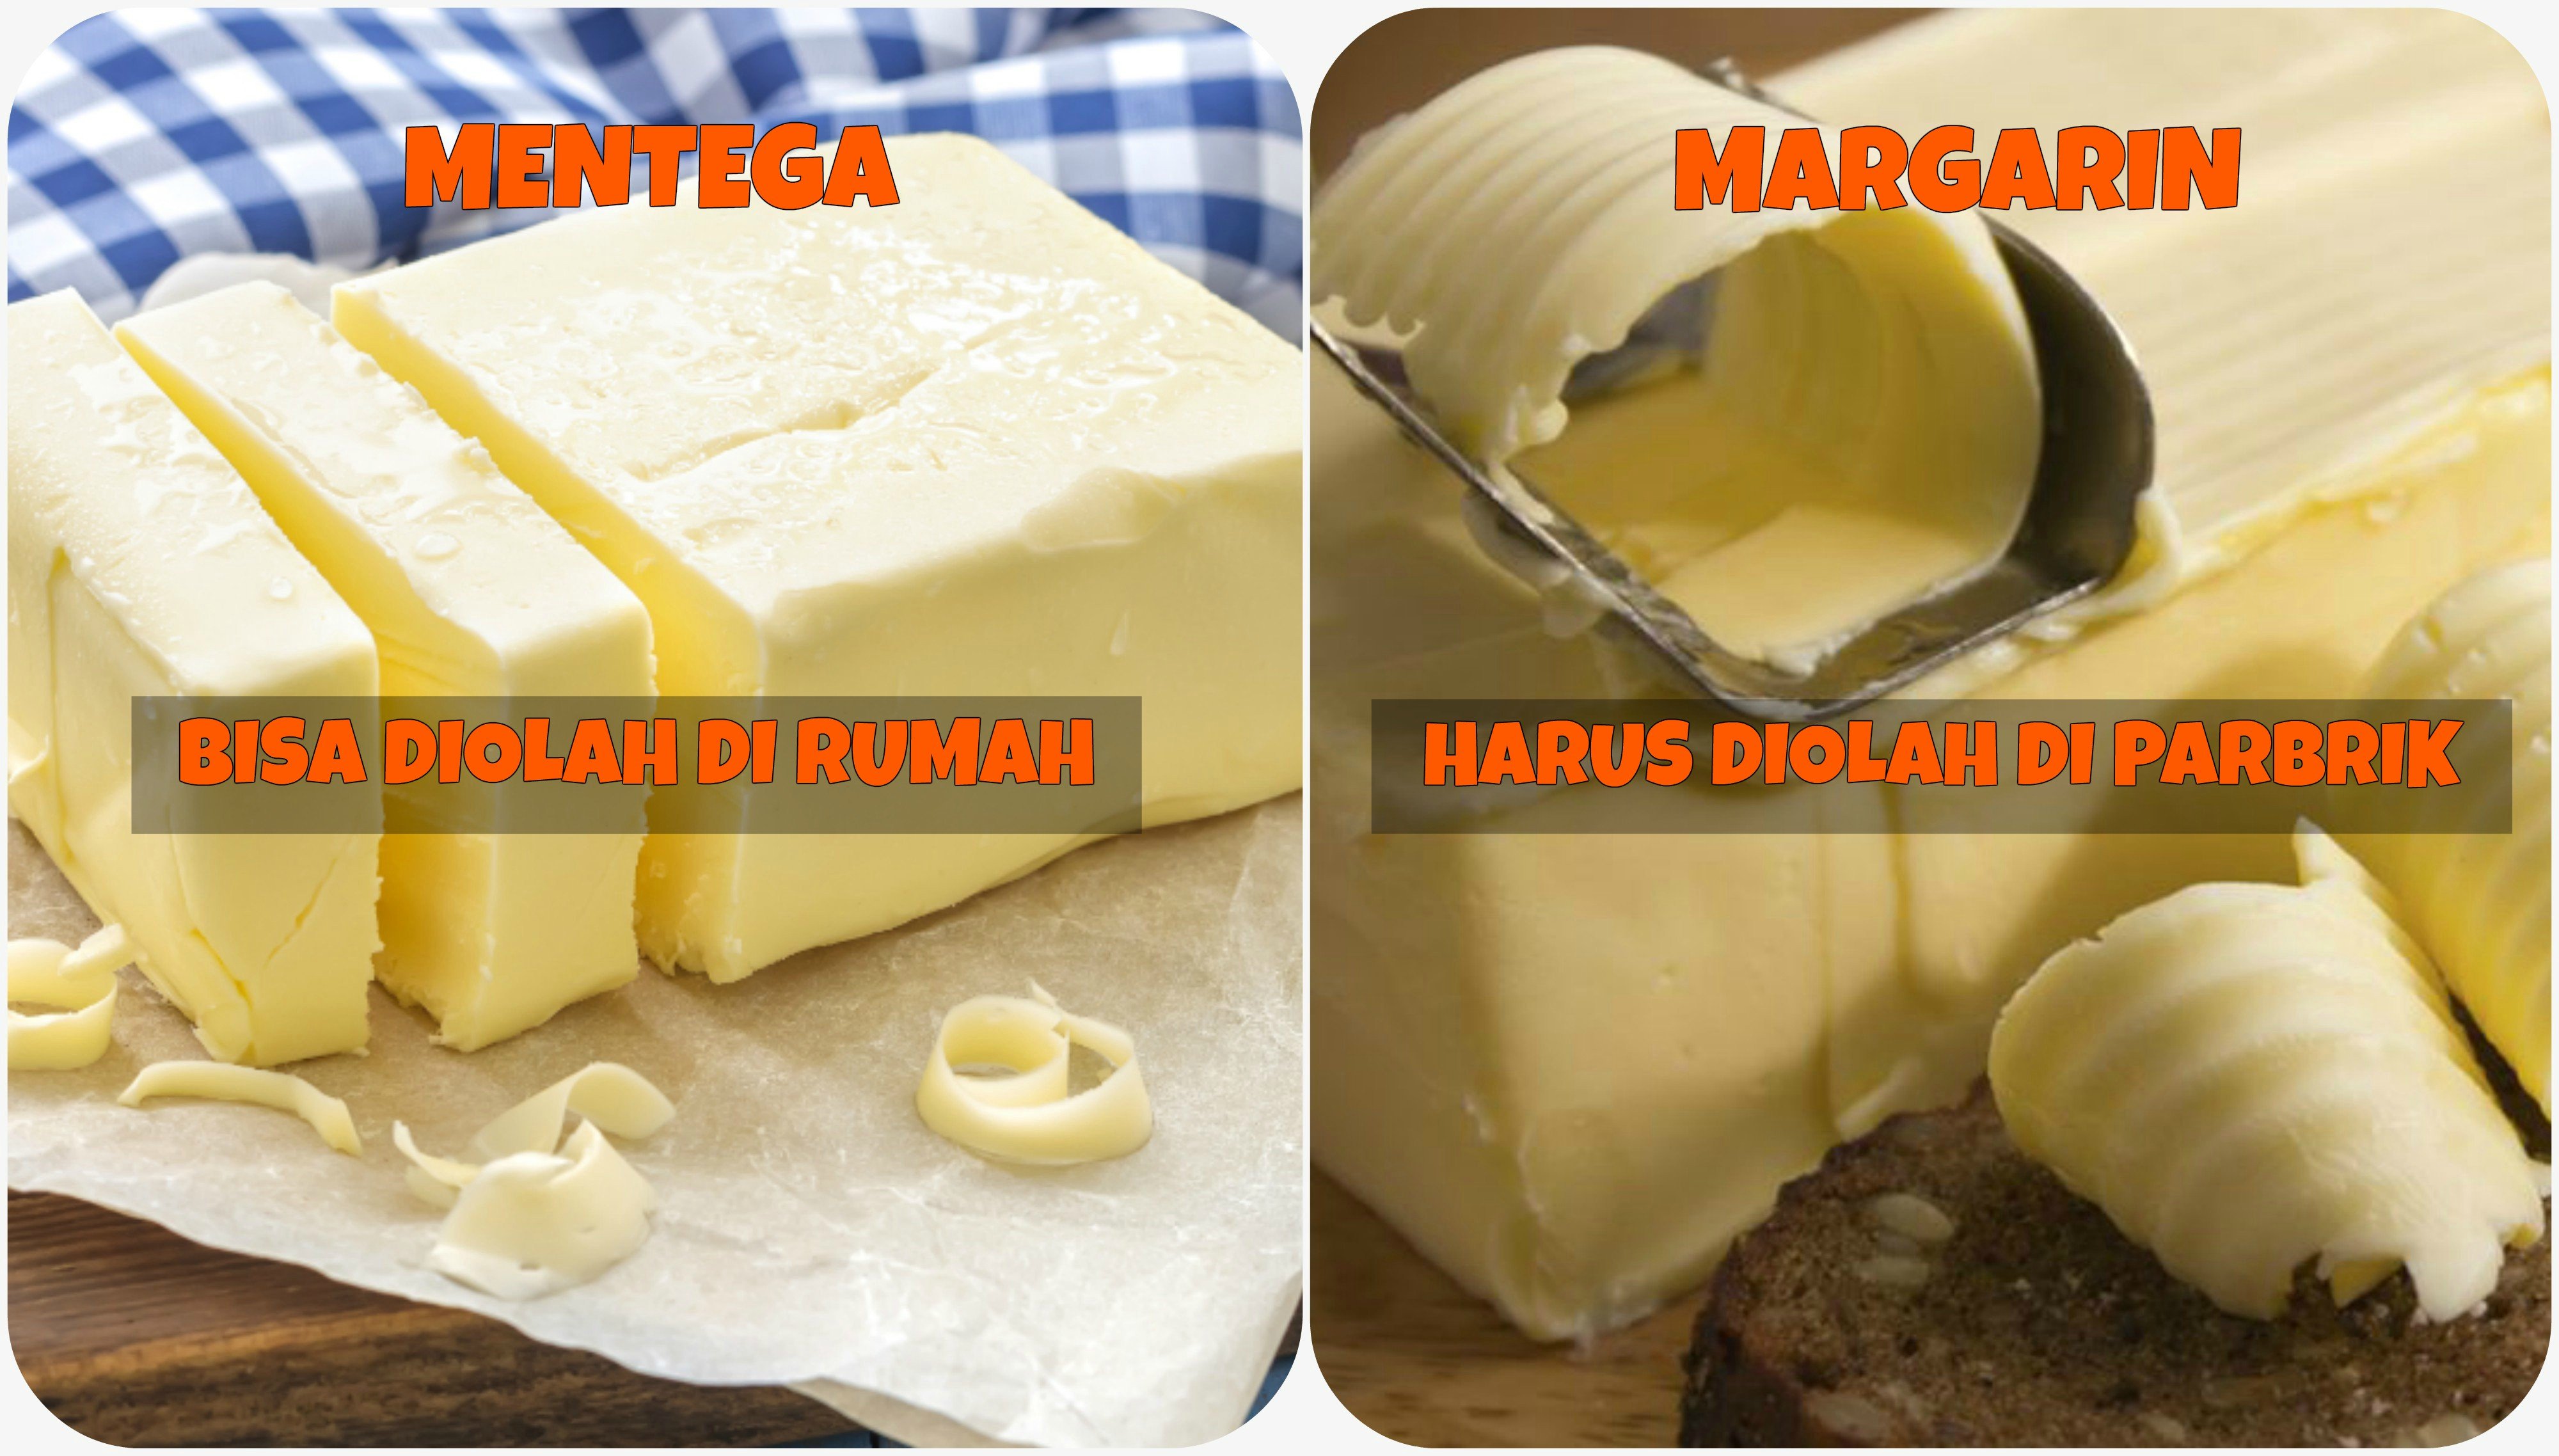 Perbedaan Proses Mentega dan Margarin